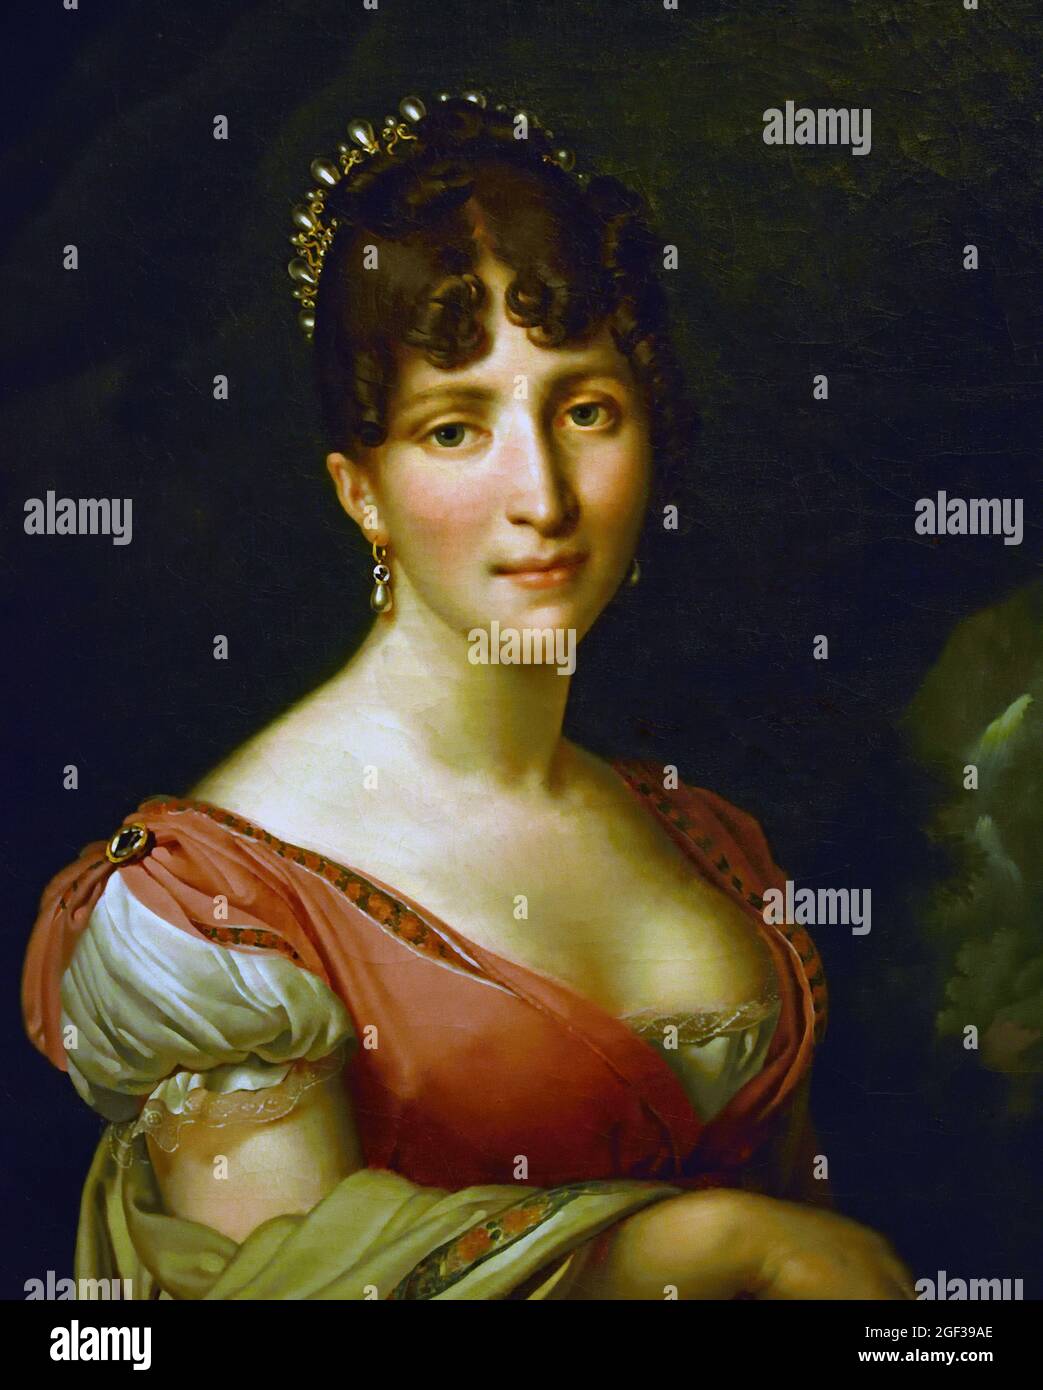 Hortense de Beauharnais, Regina d'Olanda, Anne-Louis Girodet-Trioson, 1805 - 1809 olandese, Paesi Bassi. Olio su tela, 60 x 49. Hortense era la figliastra dell'imperatore Napoleone. Attraverso il suo matrimonio con il fratello di Napoleone, Lodewijk Napoleone, divenne Regina d'Olanda nel 1806. Il matrimonio non ebbe successo e Hortense pensò che l'Olanda fosse un paese freddo e cupo. Preferì vivere con i suoi figli a Parigi, a corte. Foto Stock